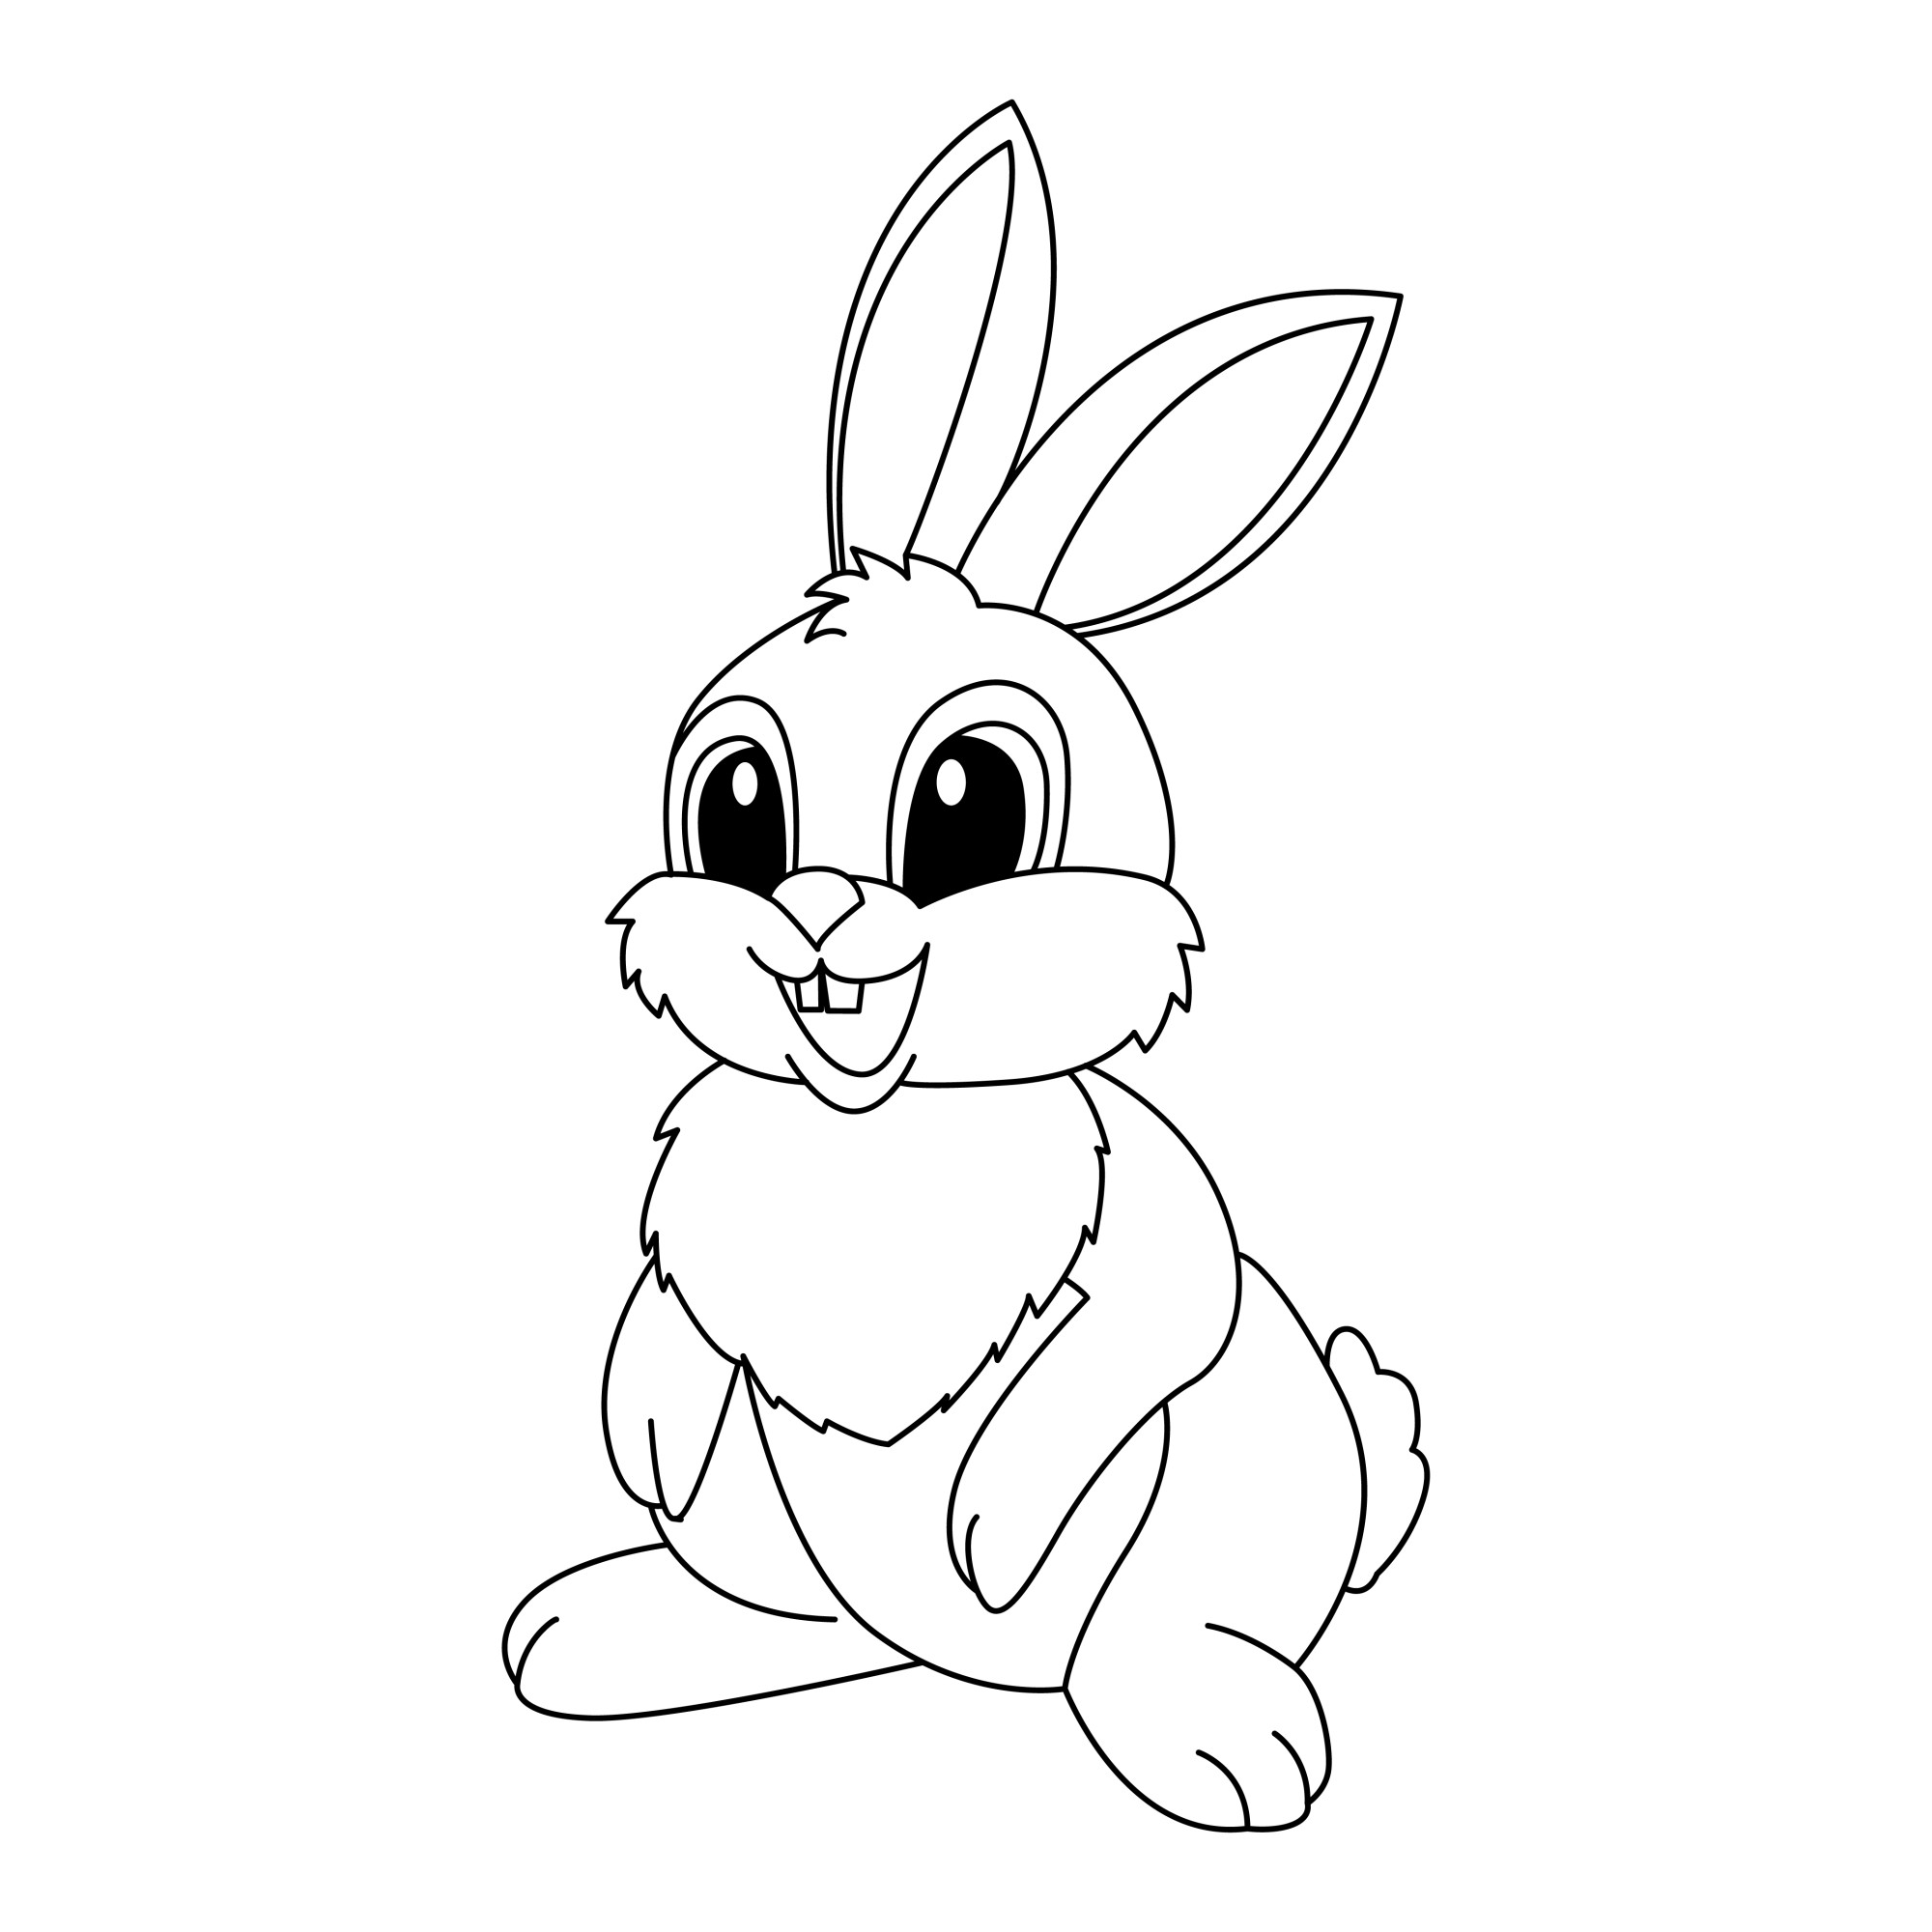 Раскраска для детей: милый заяц с большими глазами и ушами